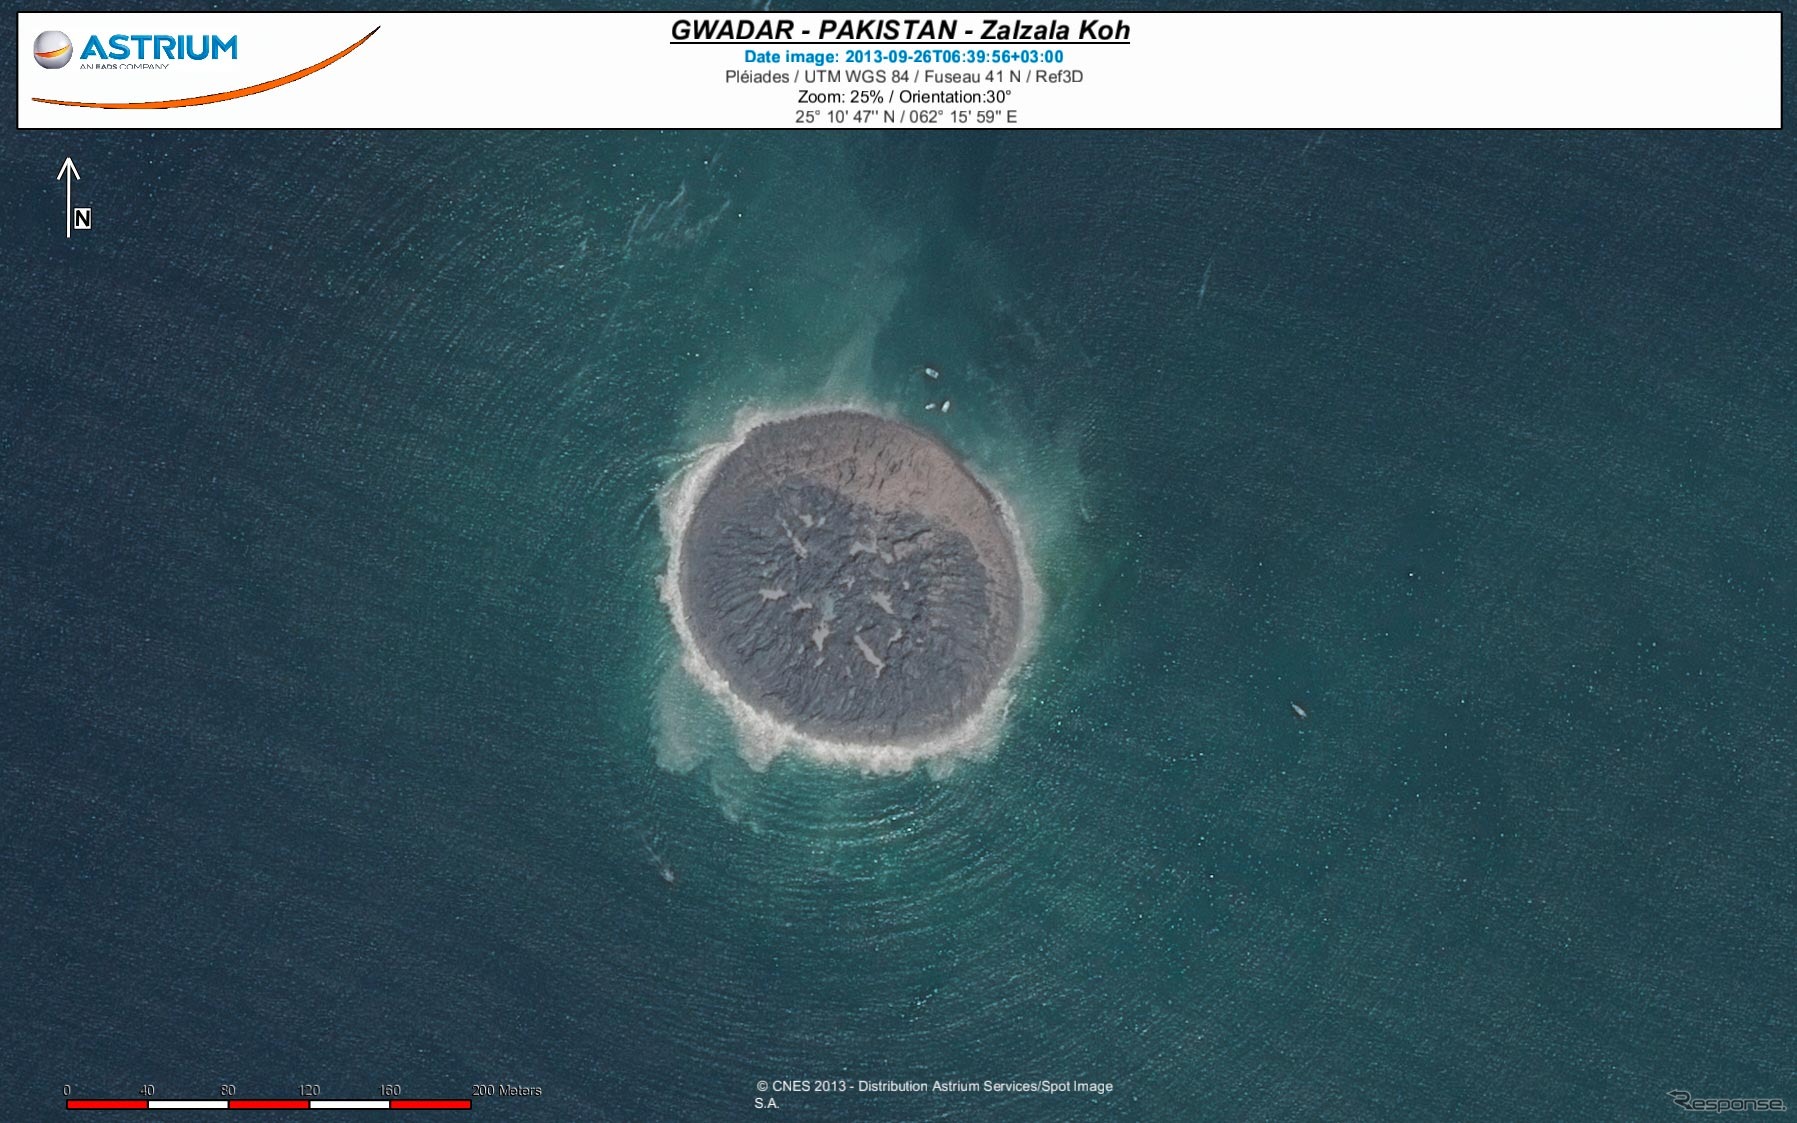 仏アストリウム、パキスタン地震島の大きさを地球観測衛星『プレアデス』画像で推定